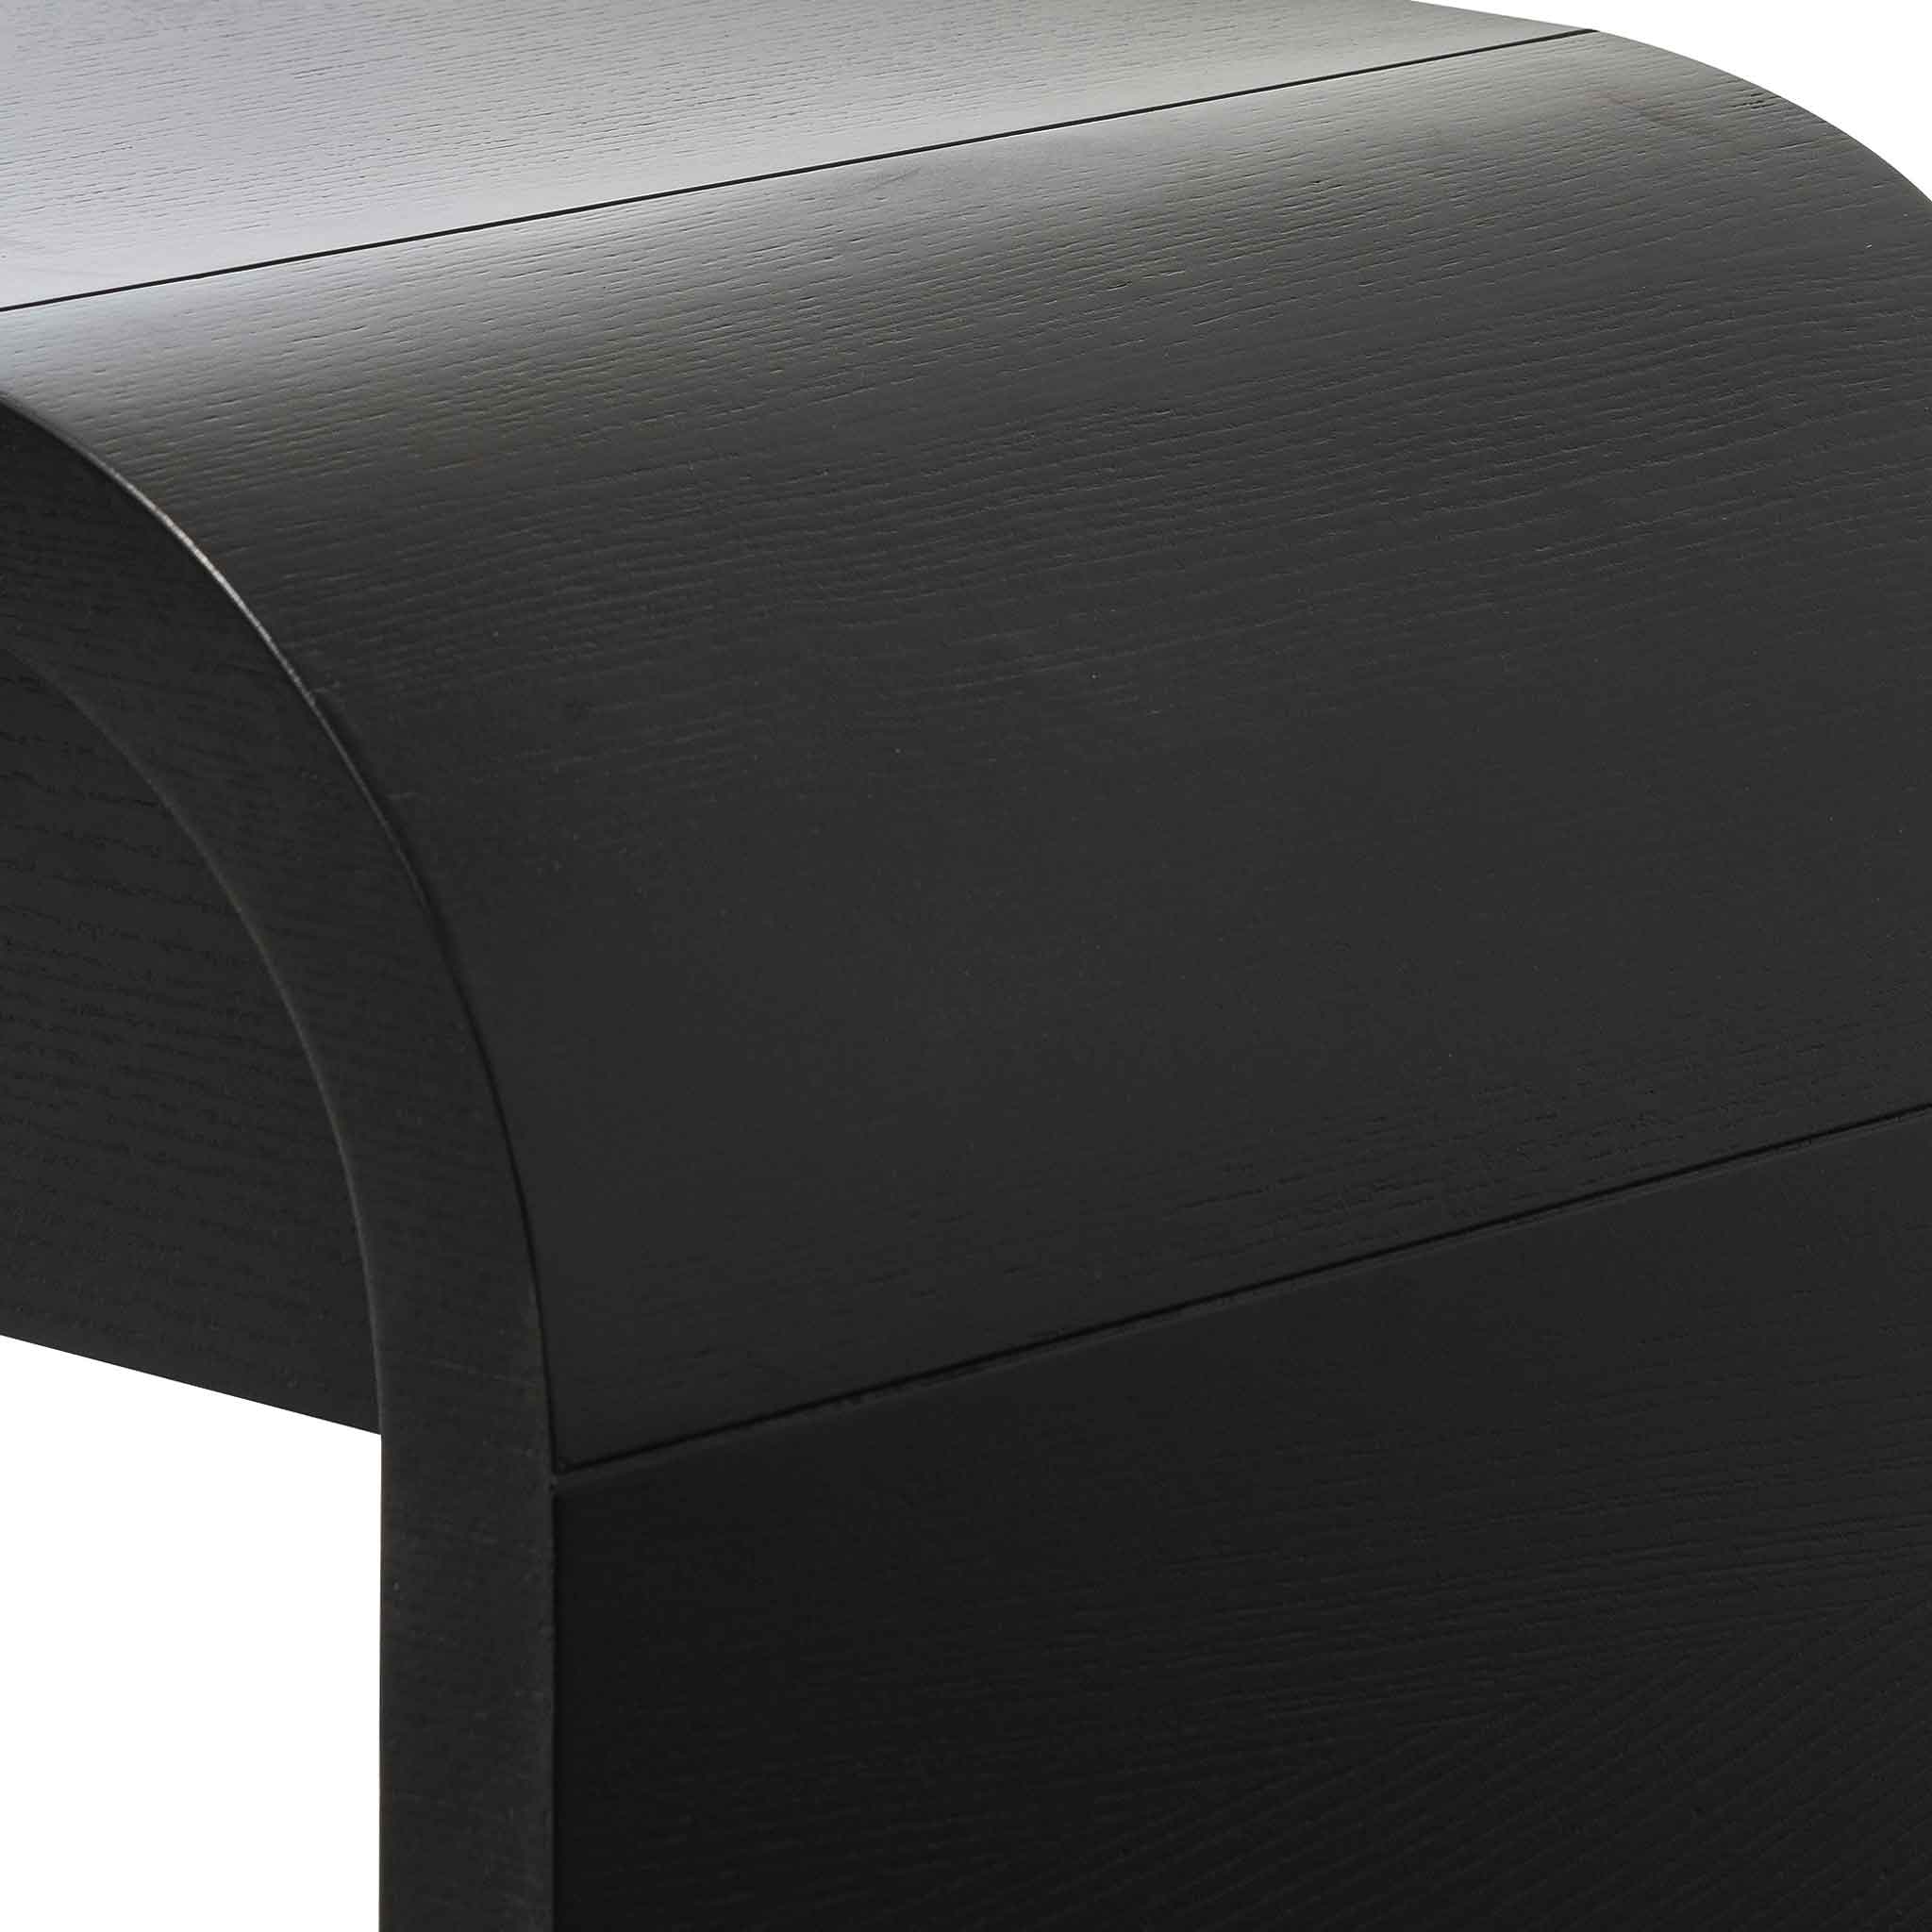 Haru 1.4m Console Table - Textured Espresso Black - Console